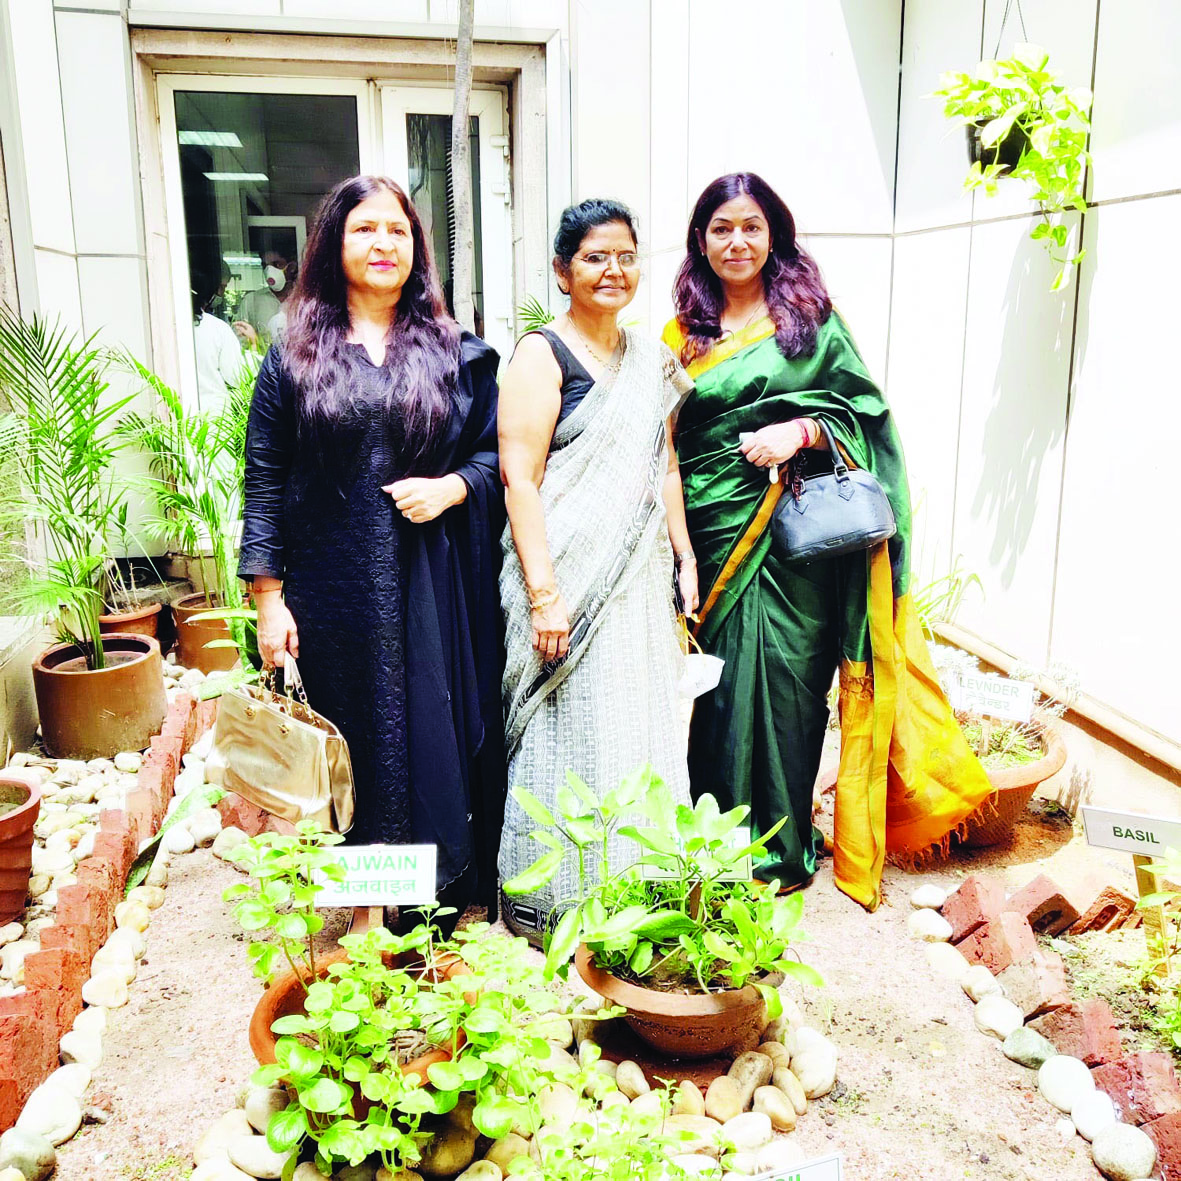 Noida news : जिला अस्पताल में तैयार किया गया हर्बल गार्डन